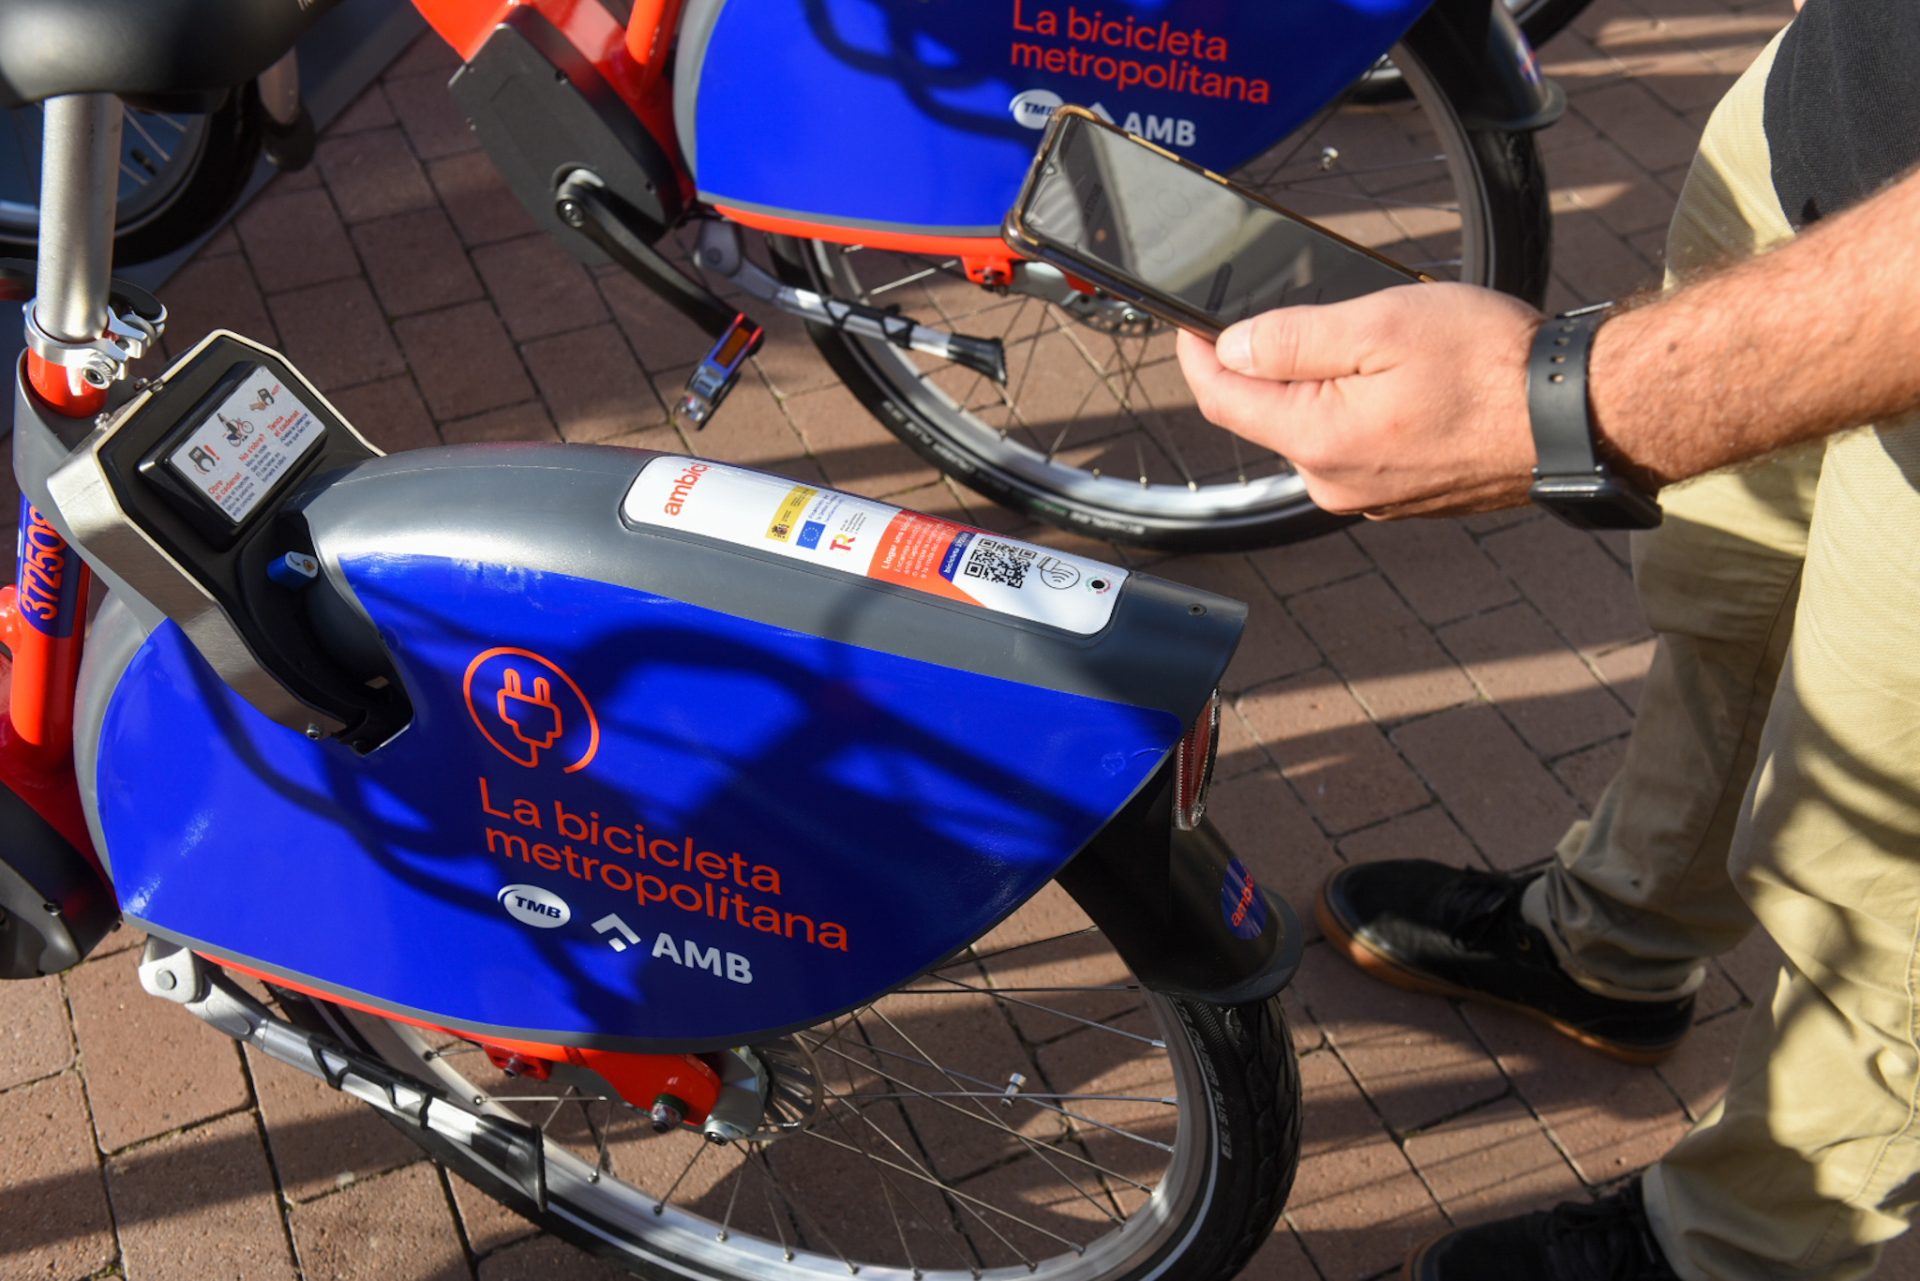 Servei de bicicleta compartida metropolitana, AMBici. Lectura del codi QR del model de bicicleta elèctrica de darrera generació amb telèfon mòbil.